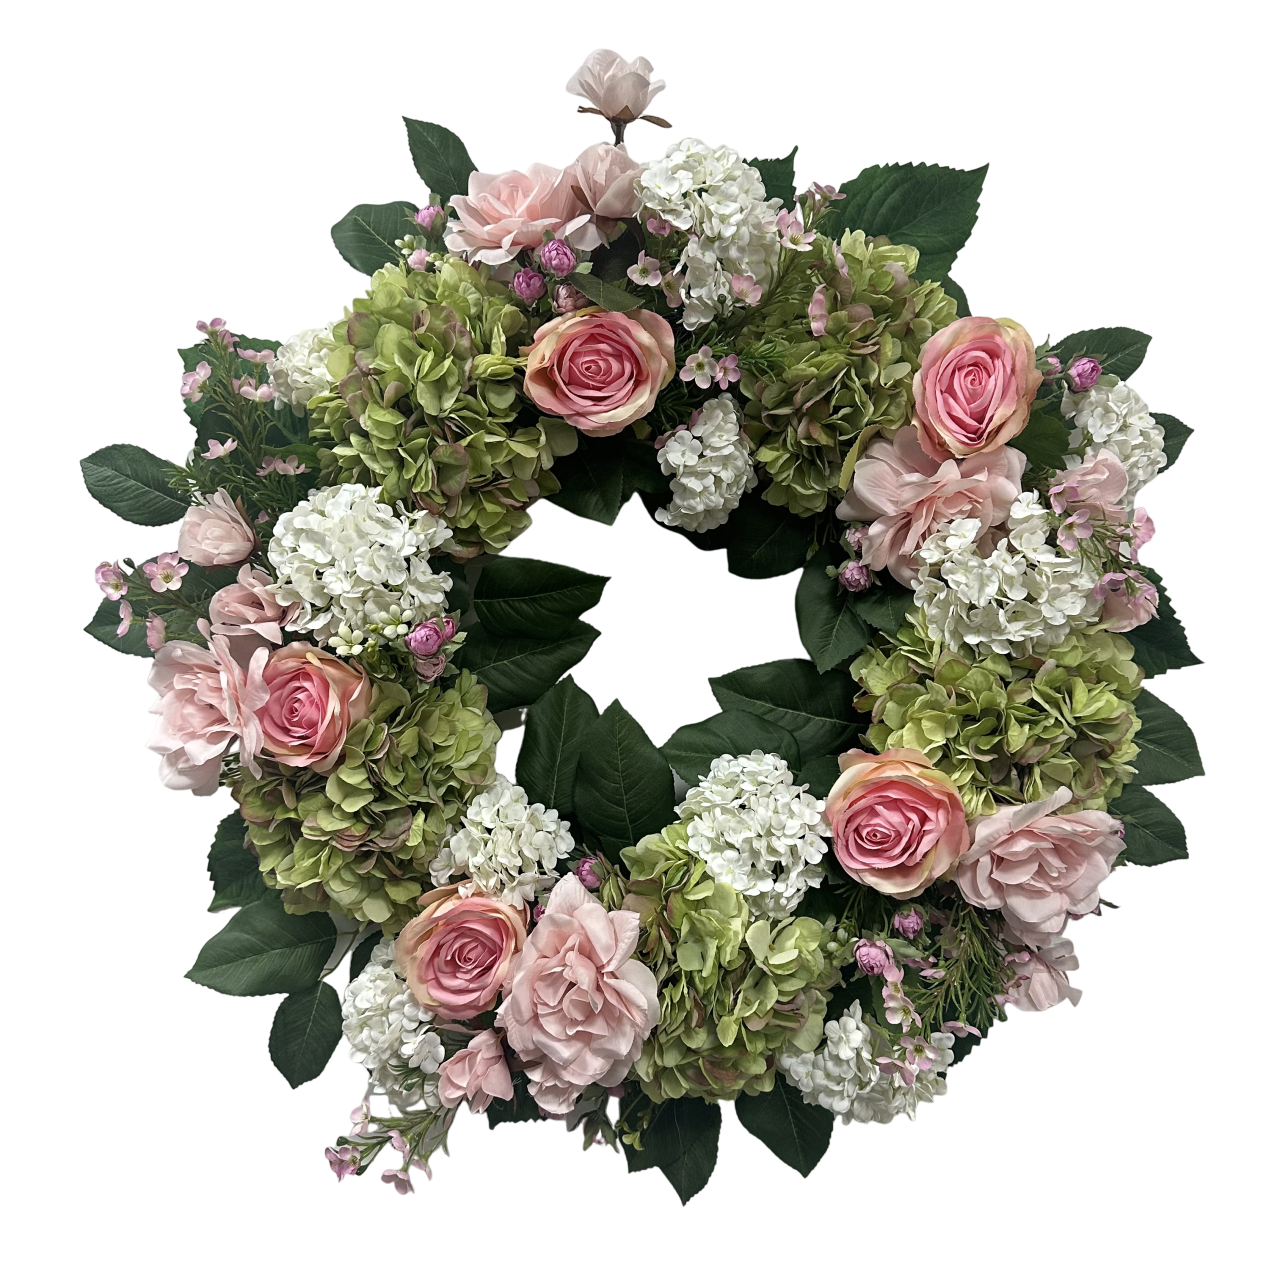 Senmasine Hortensienkranz, Pfingstrose, künstliche Kränze, Blumen, Rose, Dahlie, für die Frühlingsdekoration an der Haustür